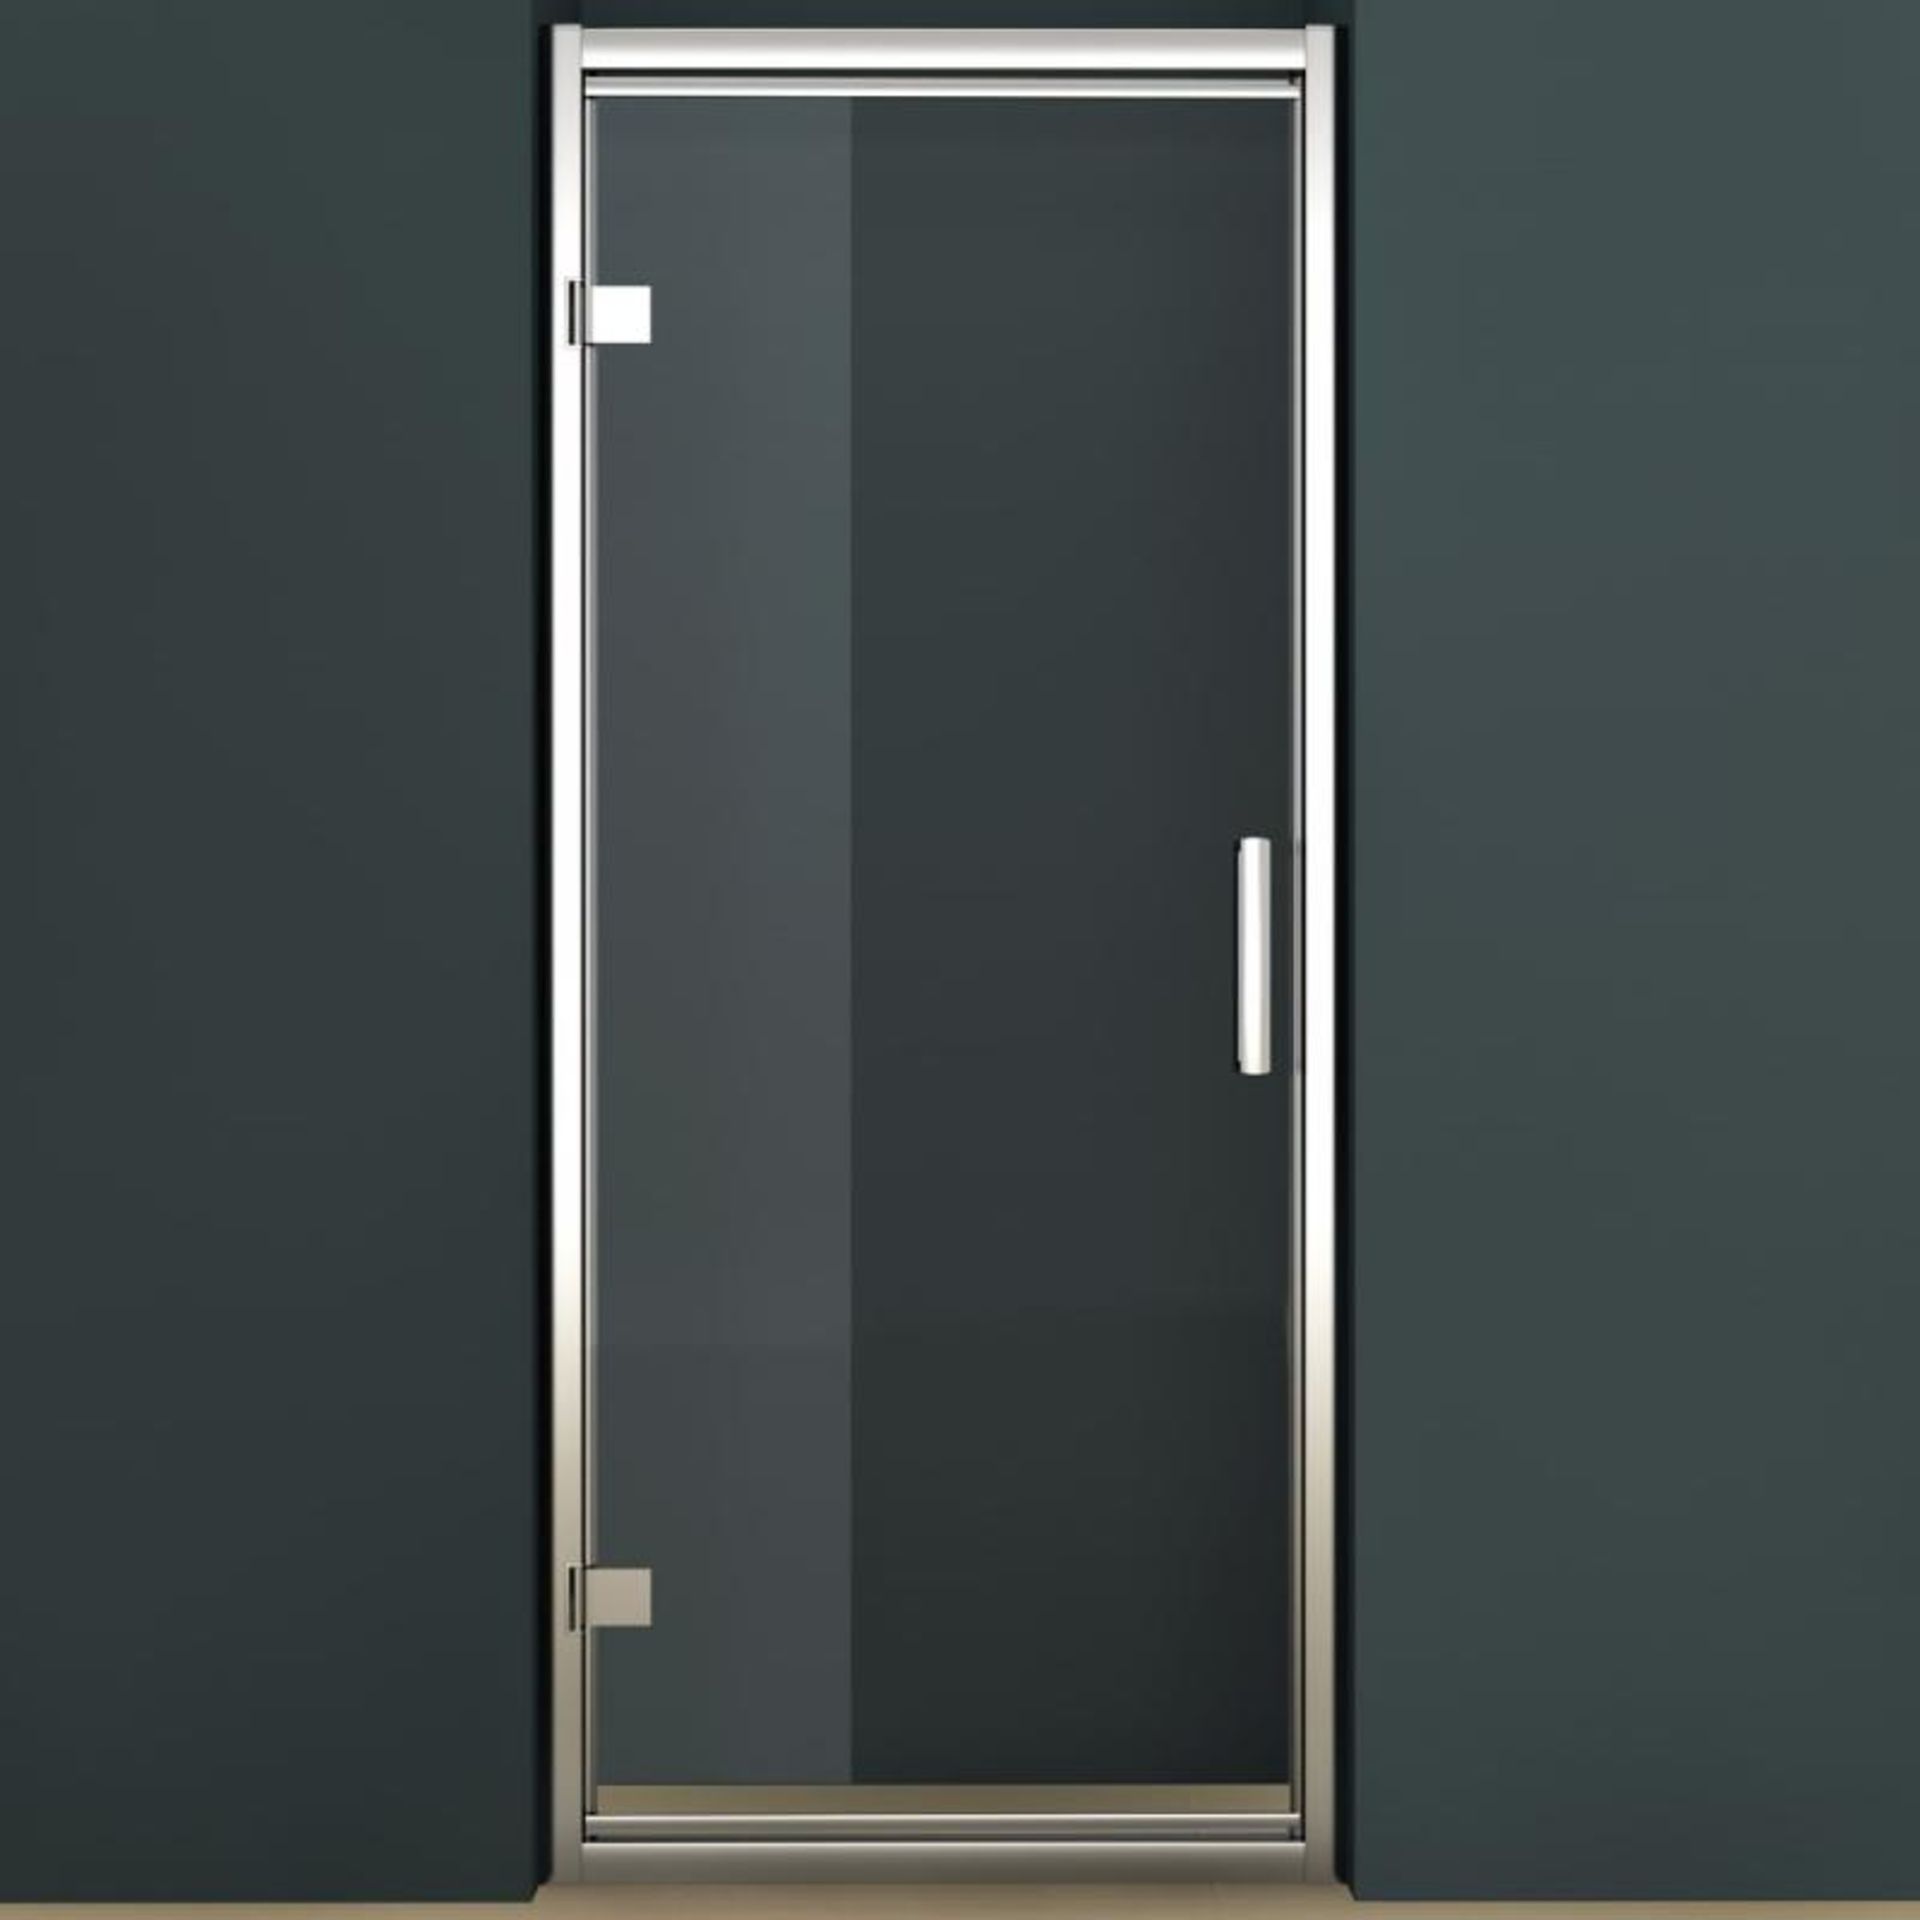 1 x Tavistock Oyxgen8 8mm 900mm Hinged Door Shower Enclosure - Includes SE1H90 Hinged Door and SE1SP